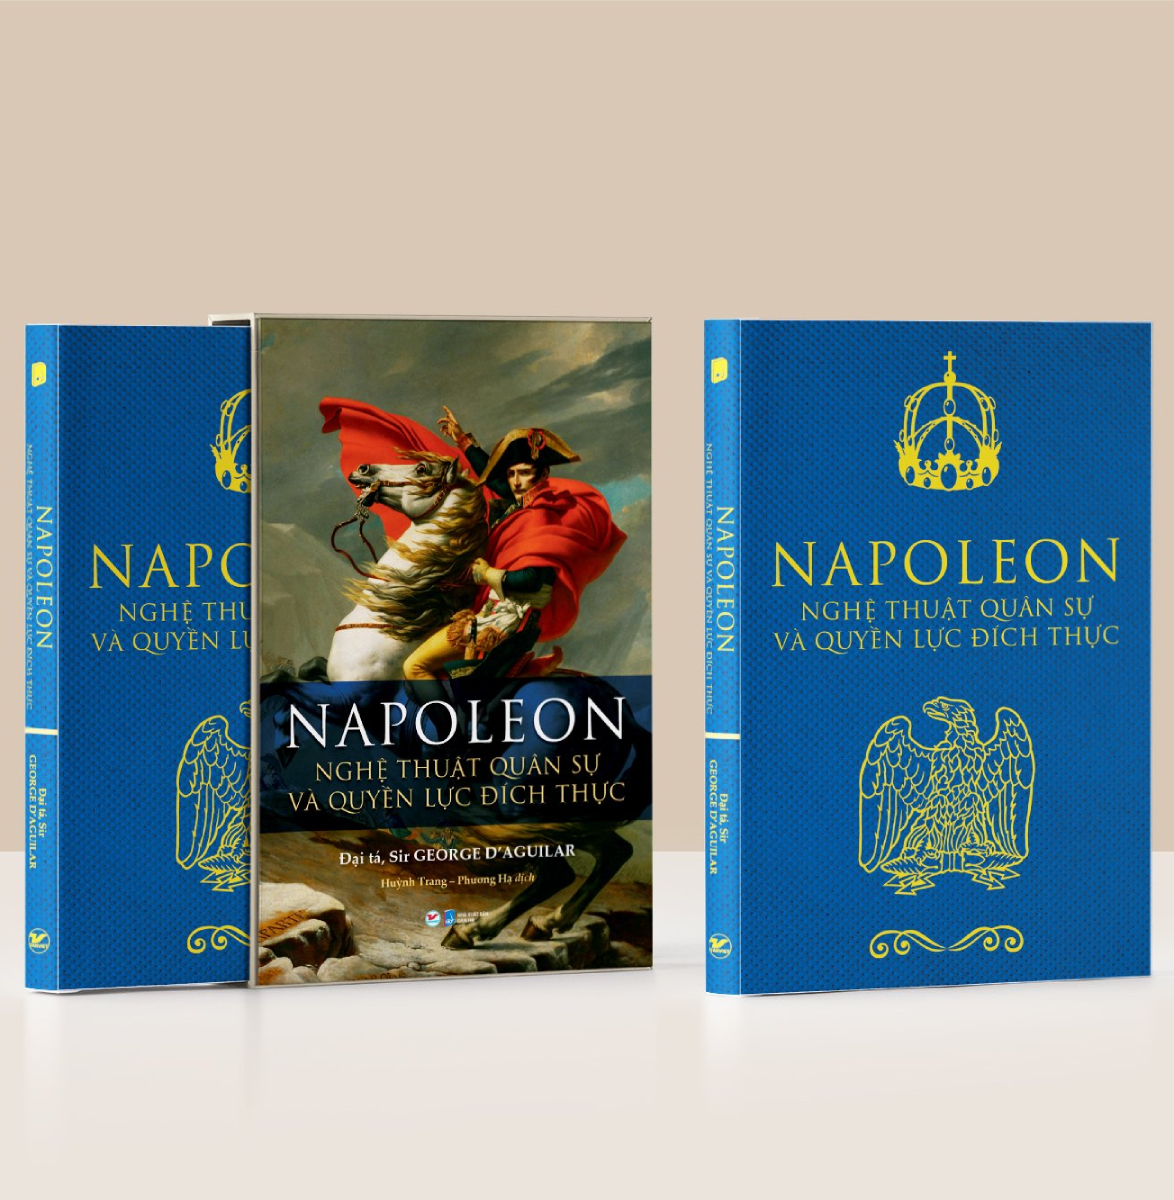 Napoleon - Nghệ Thuật Quân Sự Và Quyền Lực Đích Thực (Deluxe Book)